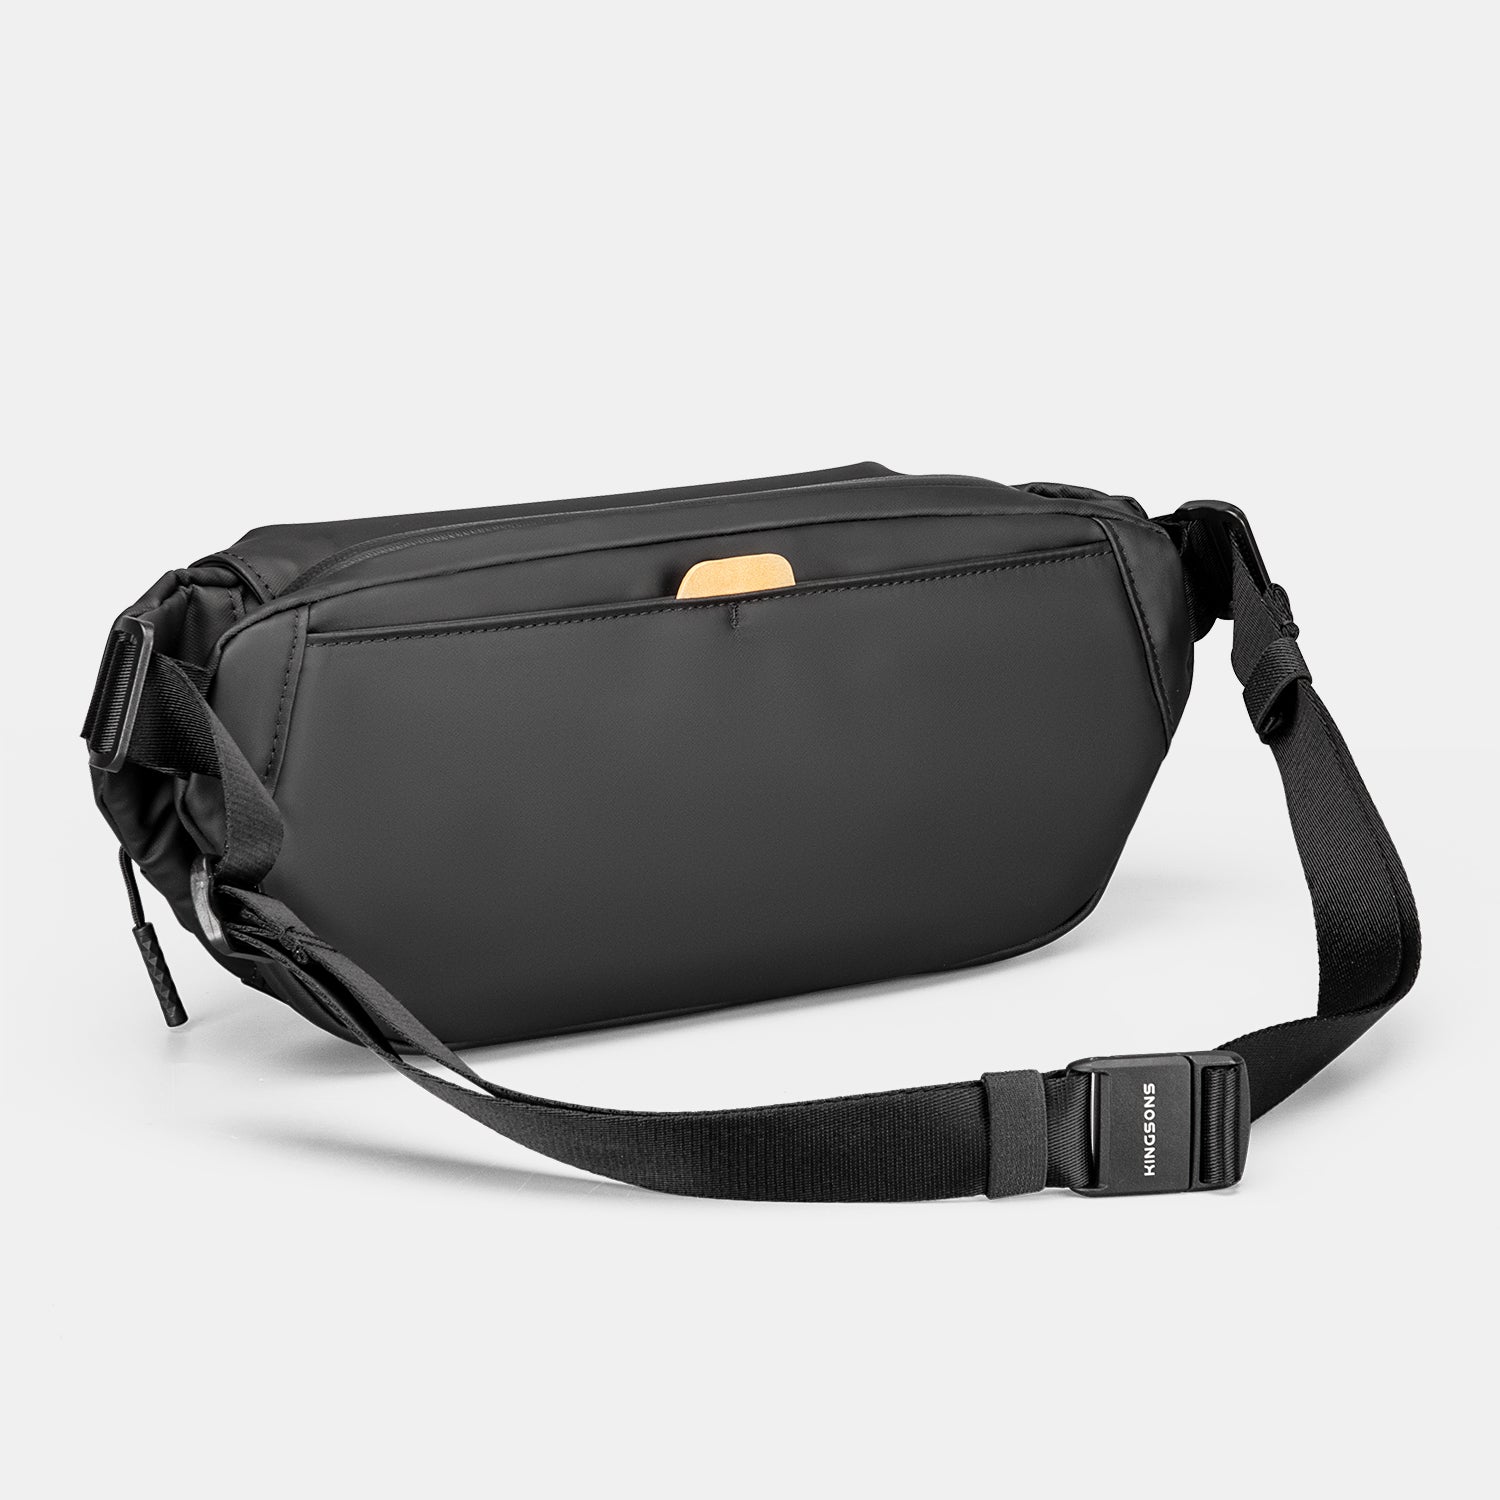 Kingsons Sling Bag Backpack Versatile Crossbody Shoulder Bag For Travel Hiking Day pack